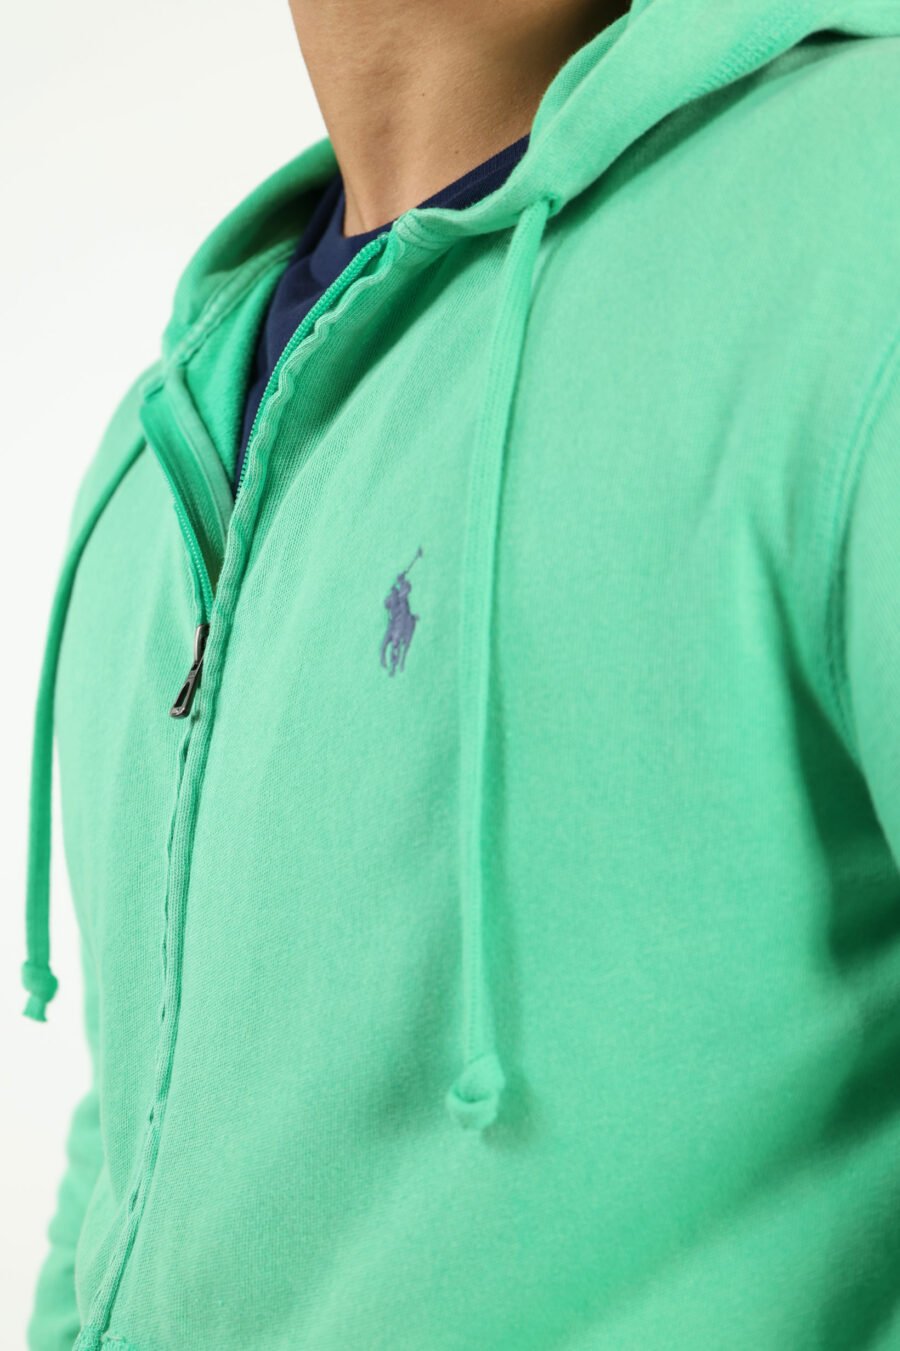 Sudadera verde con capucha y minilogo "polo" - number14040